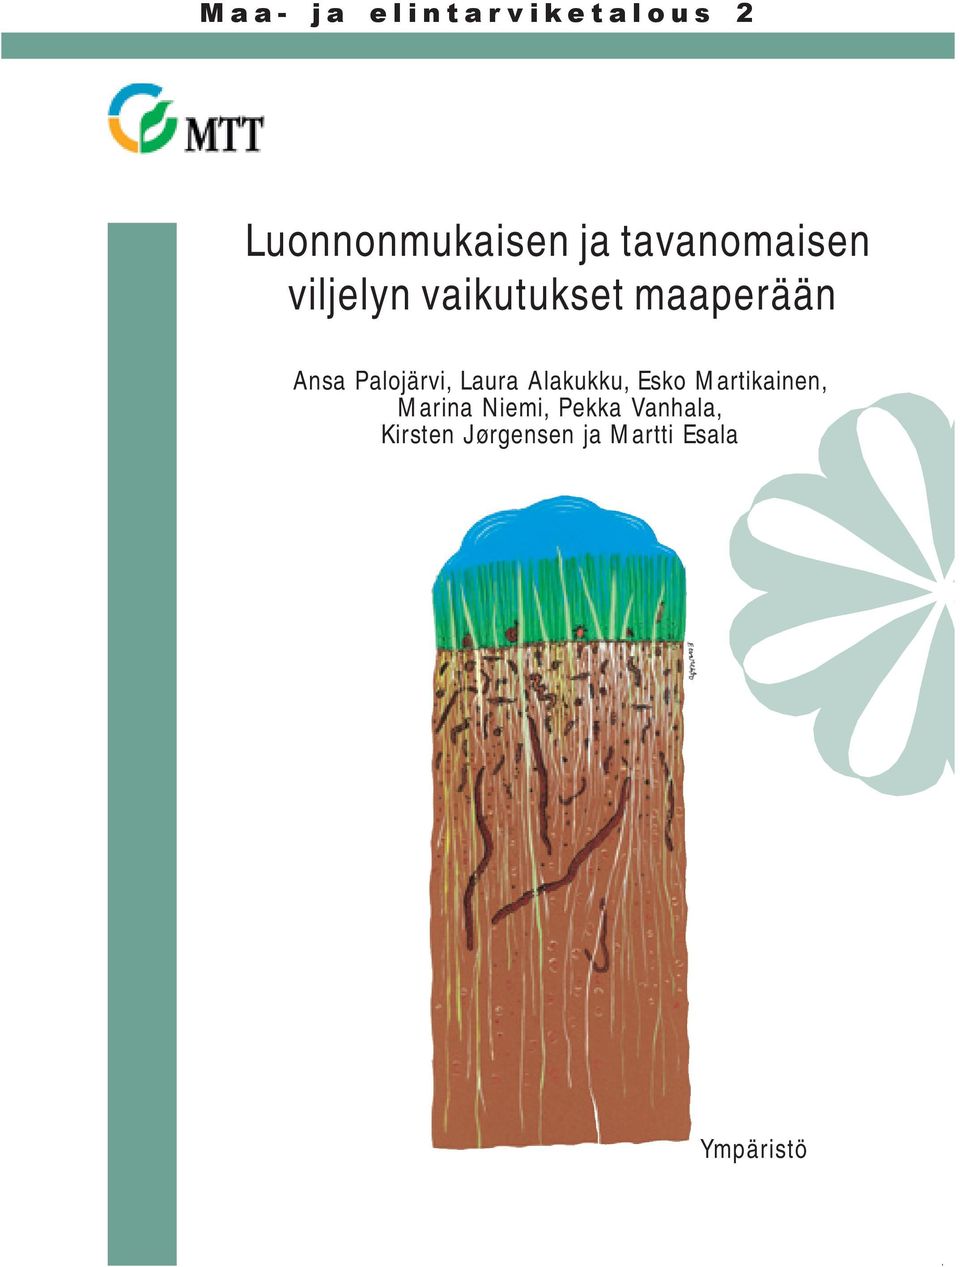 Palojärvi, Laura Alakukku, Esko Martikainen, Marina